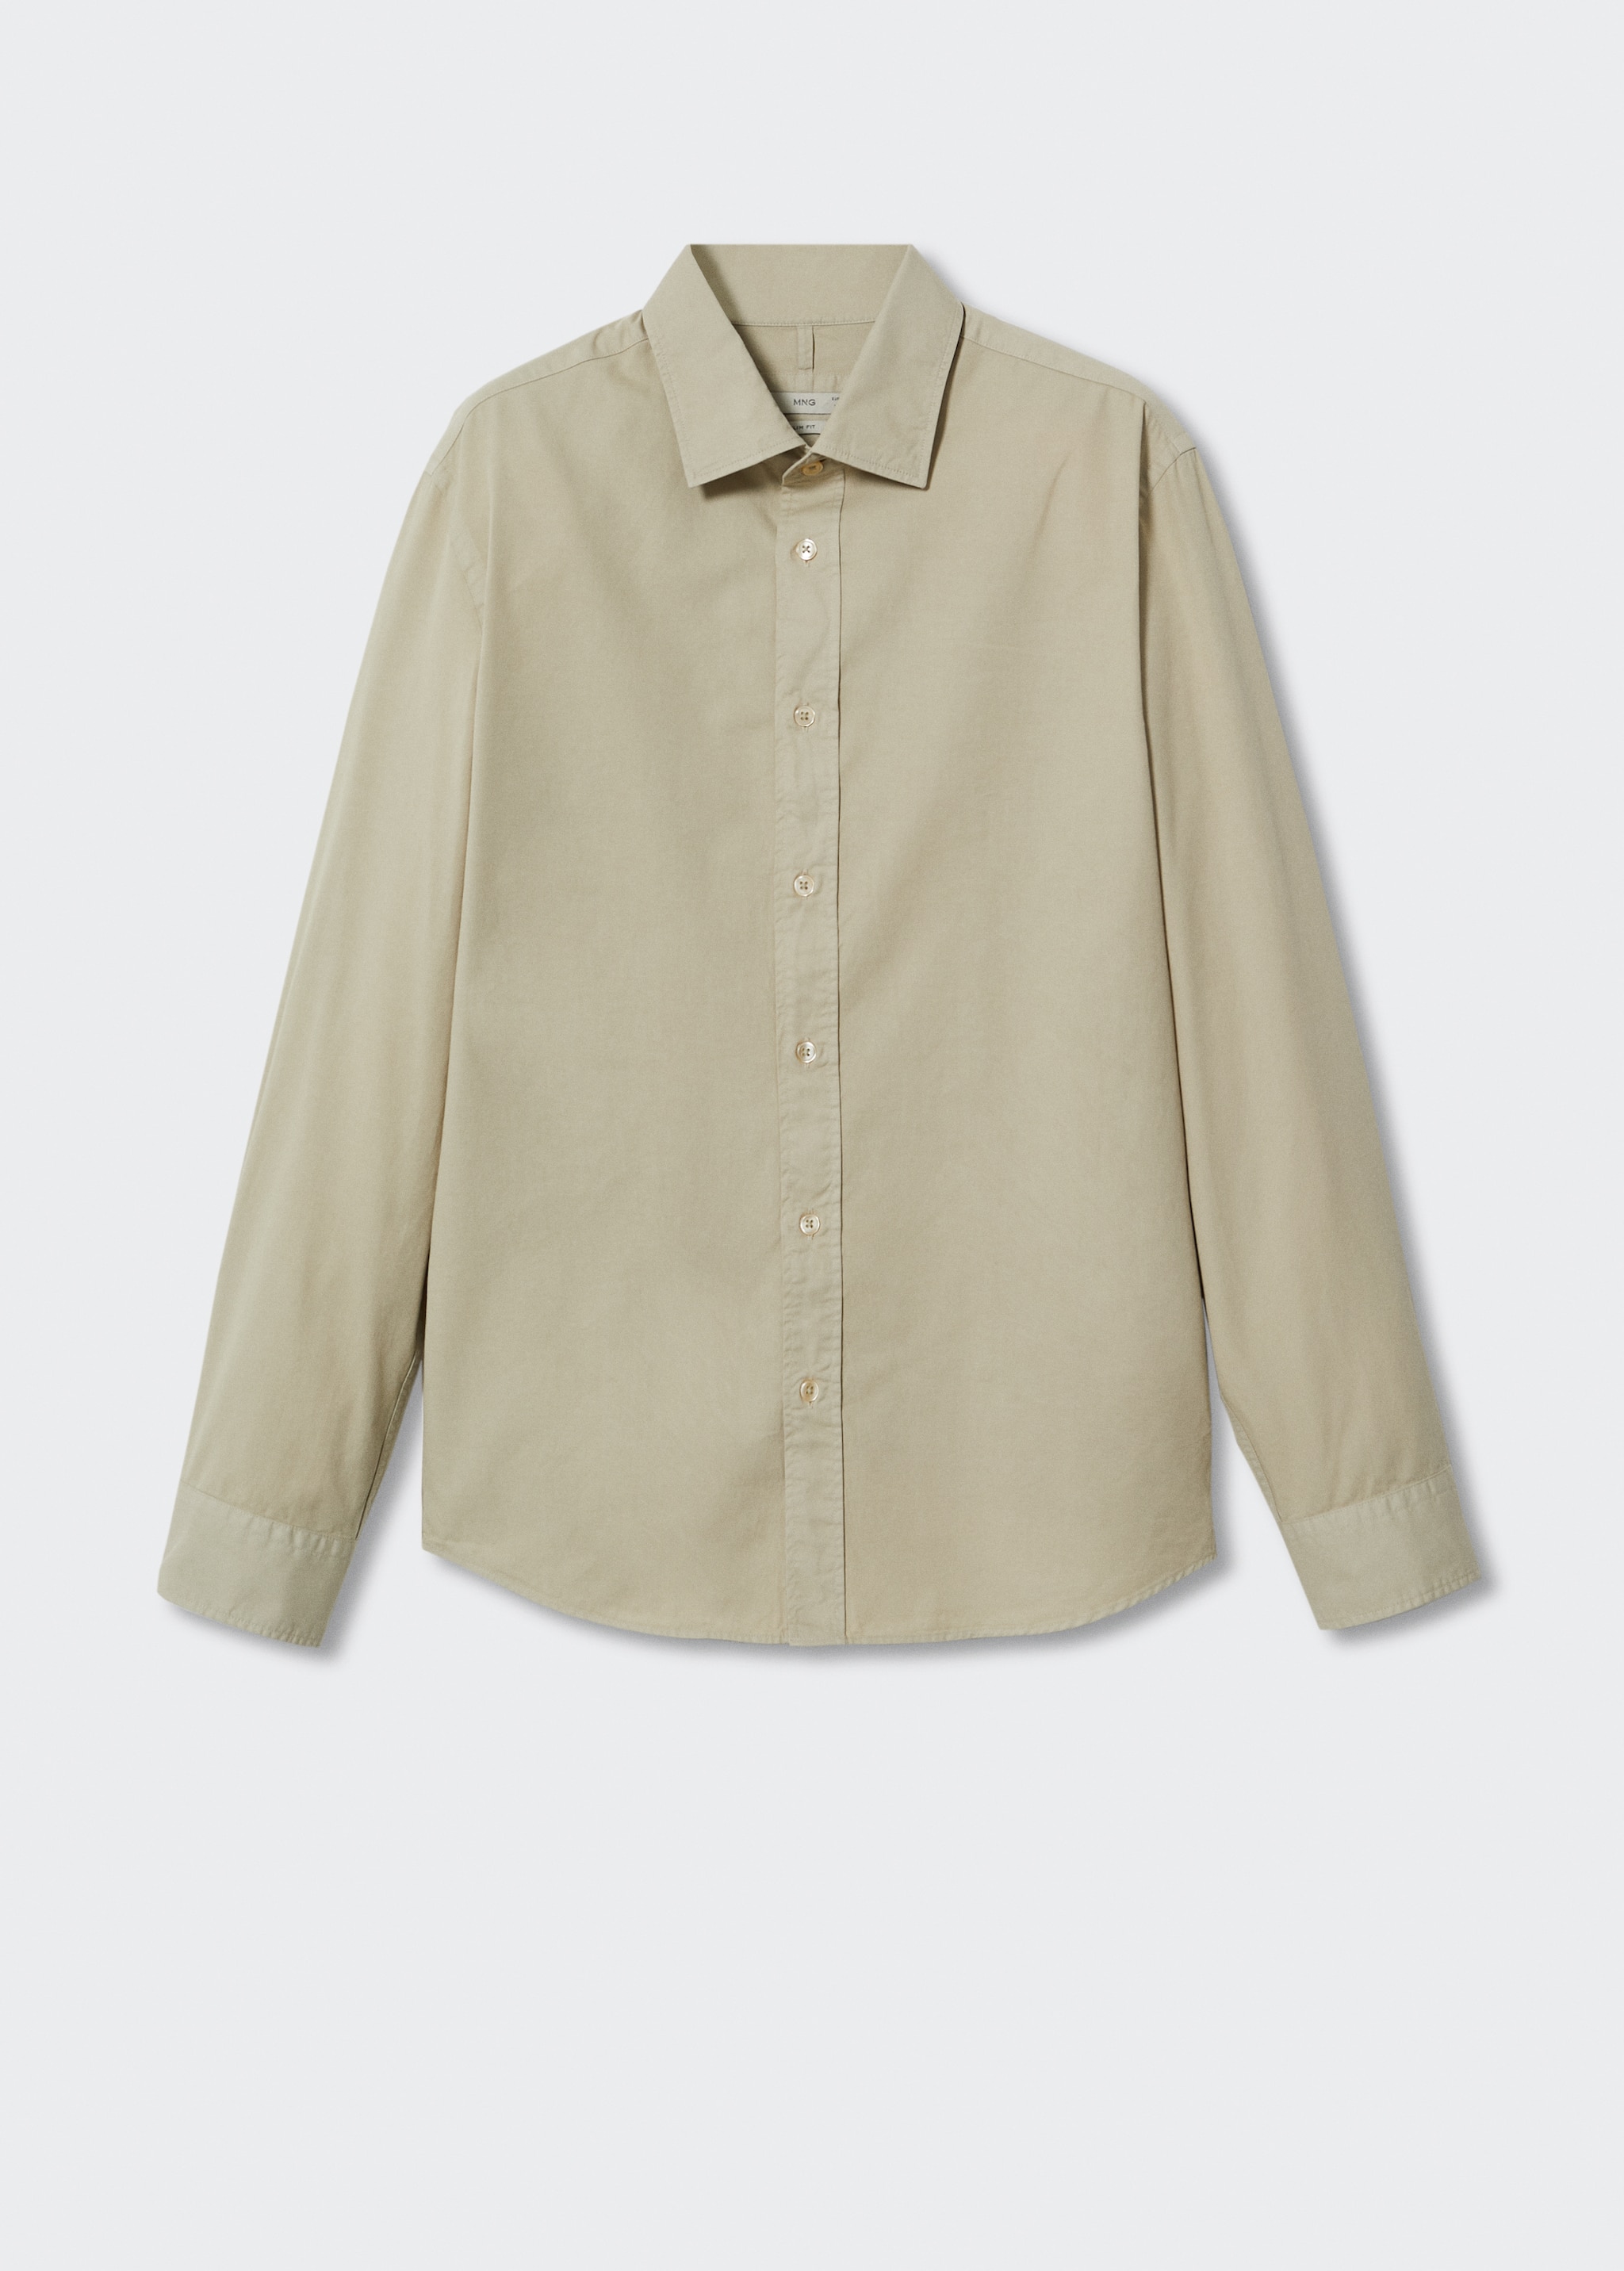 Camisa slim fit algodón - Artículo sin modelo